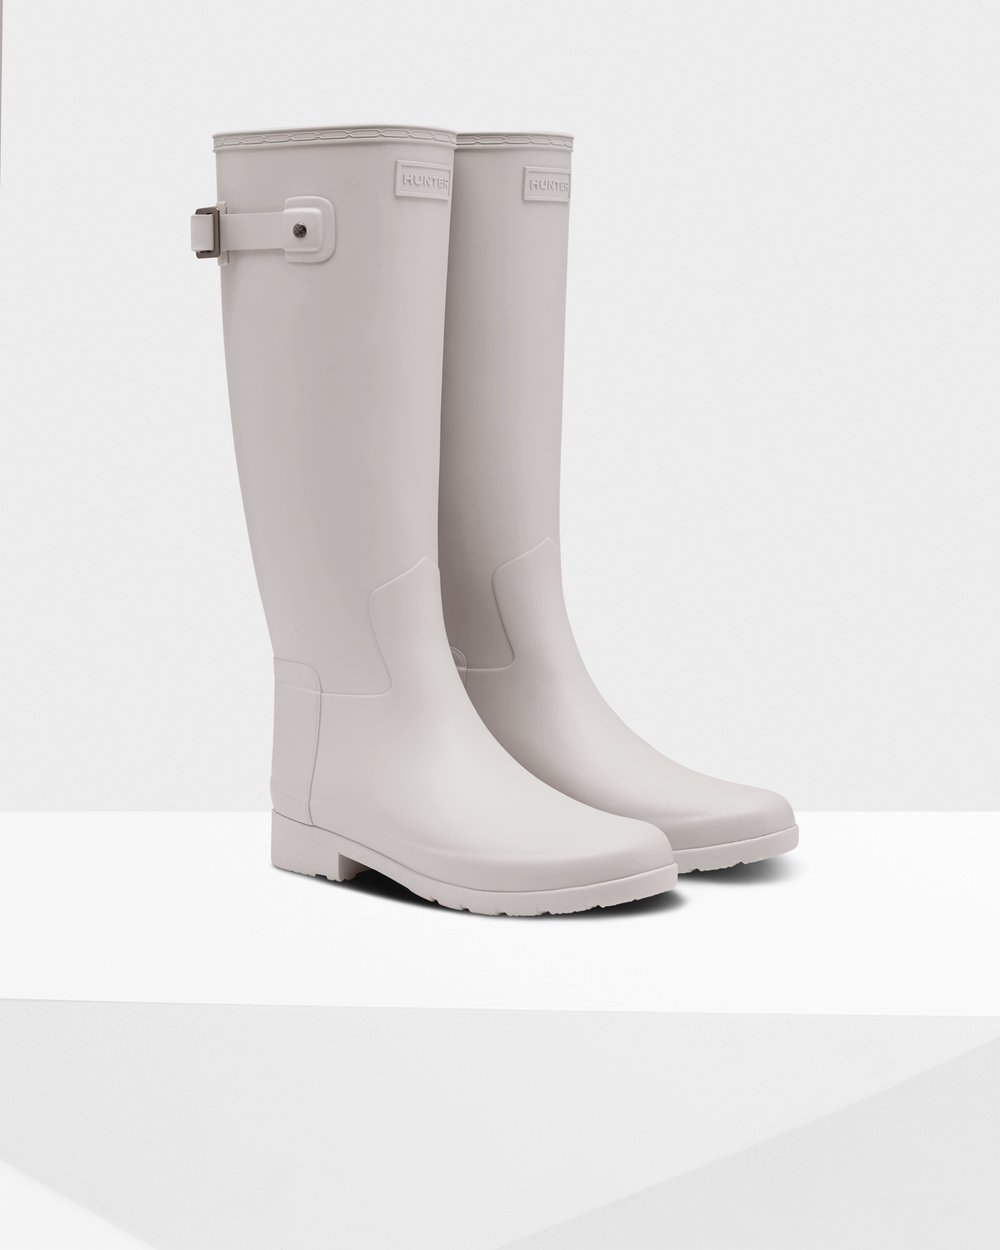 Womens Tall Rain Boots - Hunter Refined Slim Fit (01TMSXFIL) - Grey